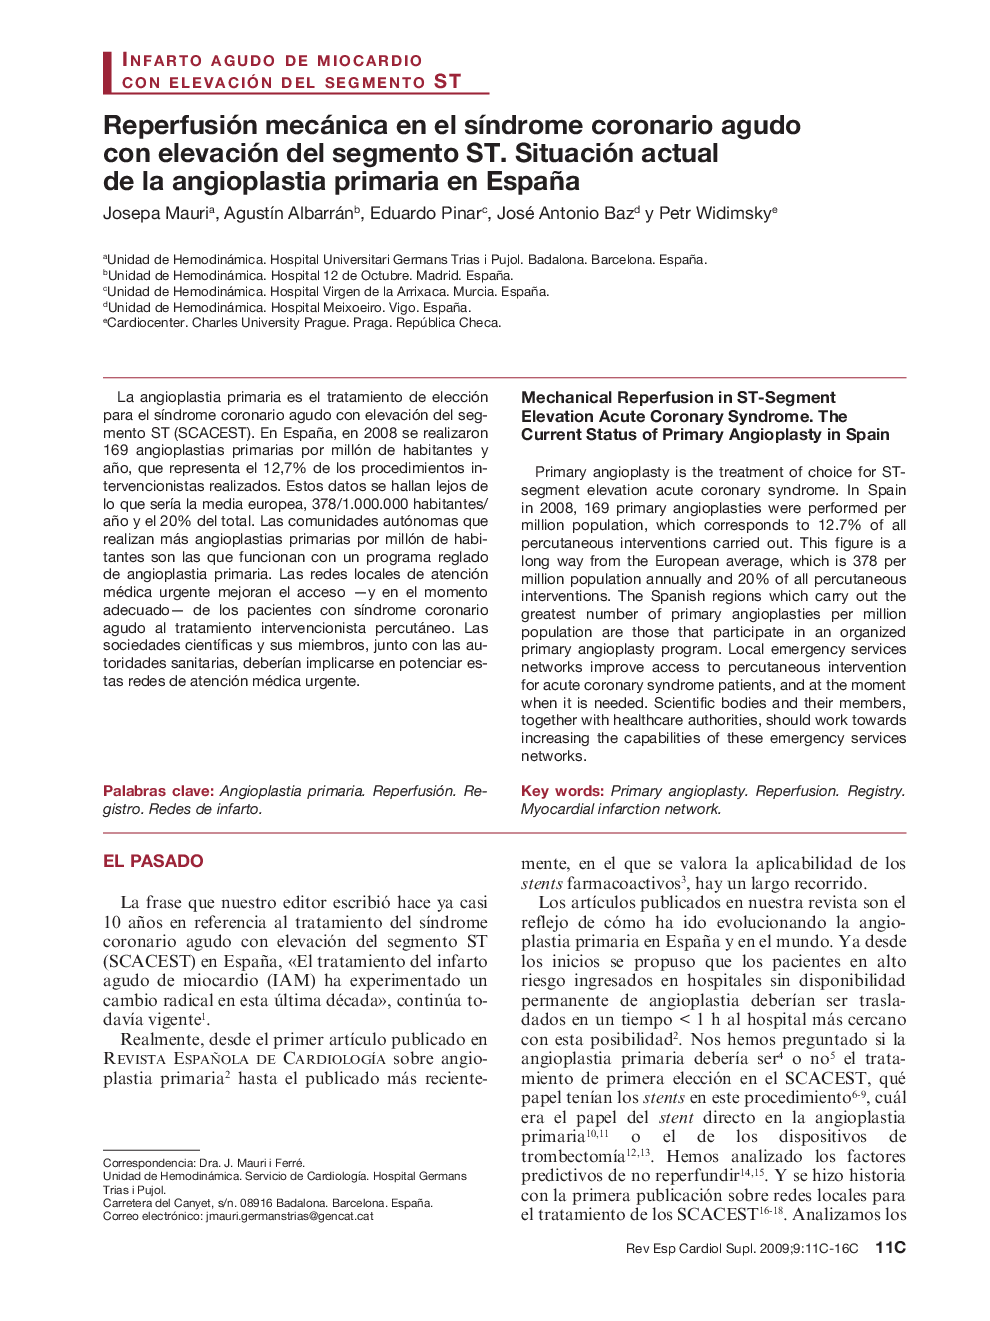 Reperfusión mecánica en el síndrome coronario agudo con elevación del segmento ST. Situación actual de la angioplastia primaria en España